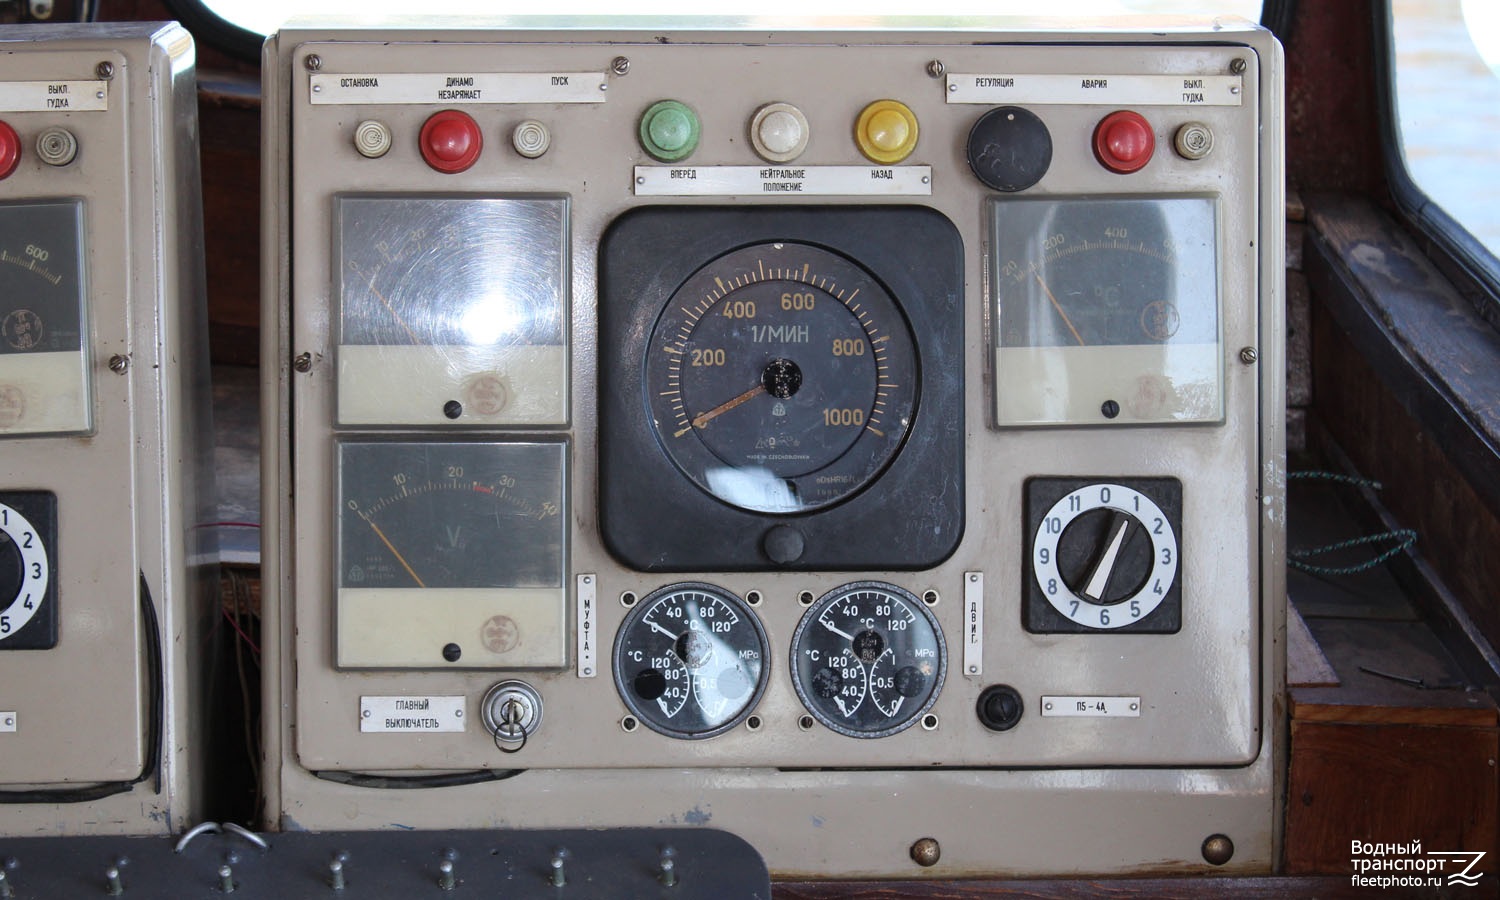 ОМ-135. Wheelhouses, Control panels